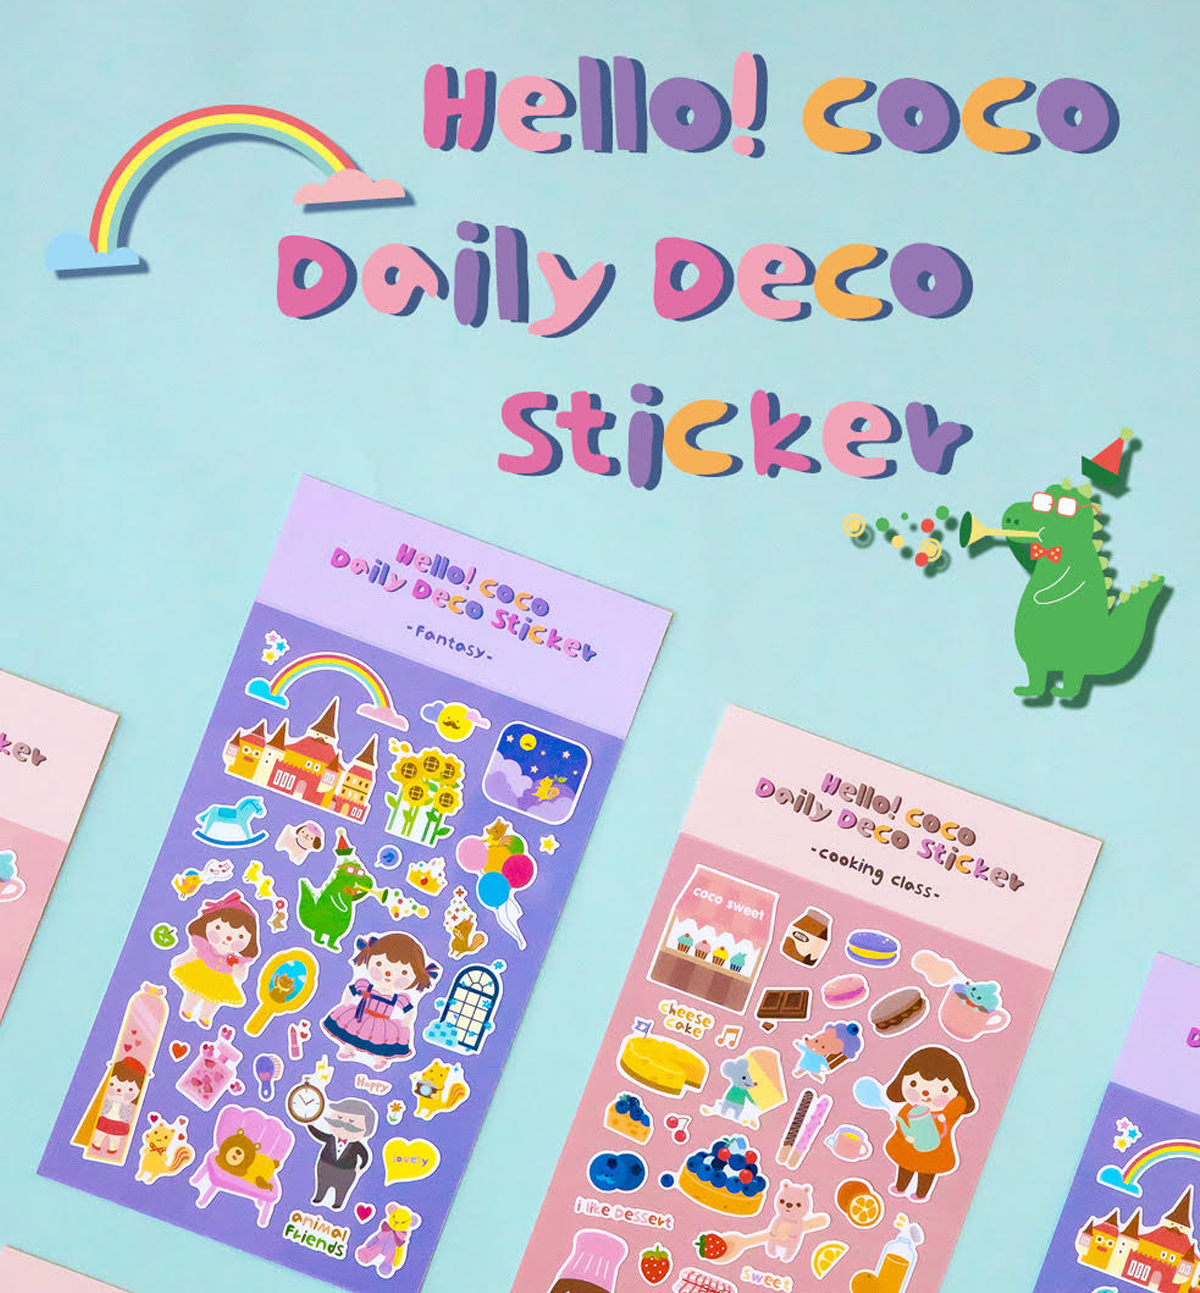 Hello! Coco Daily Deco Sticker